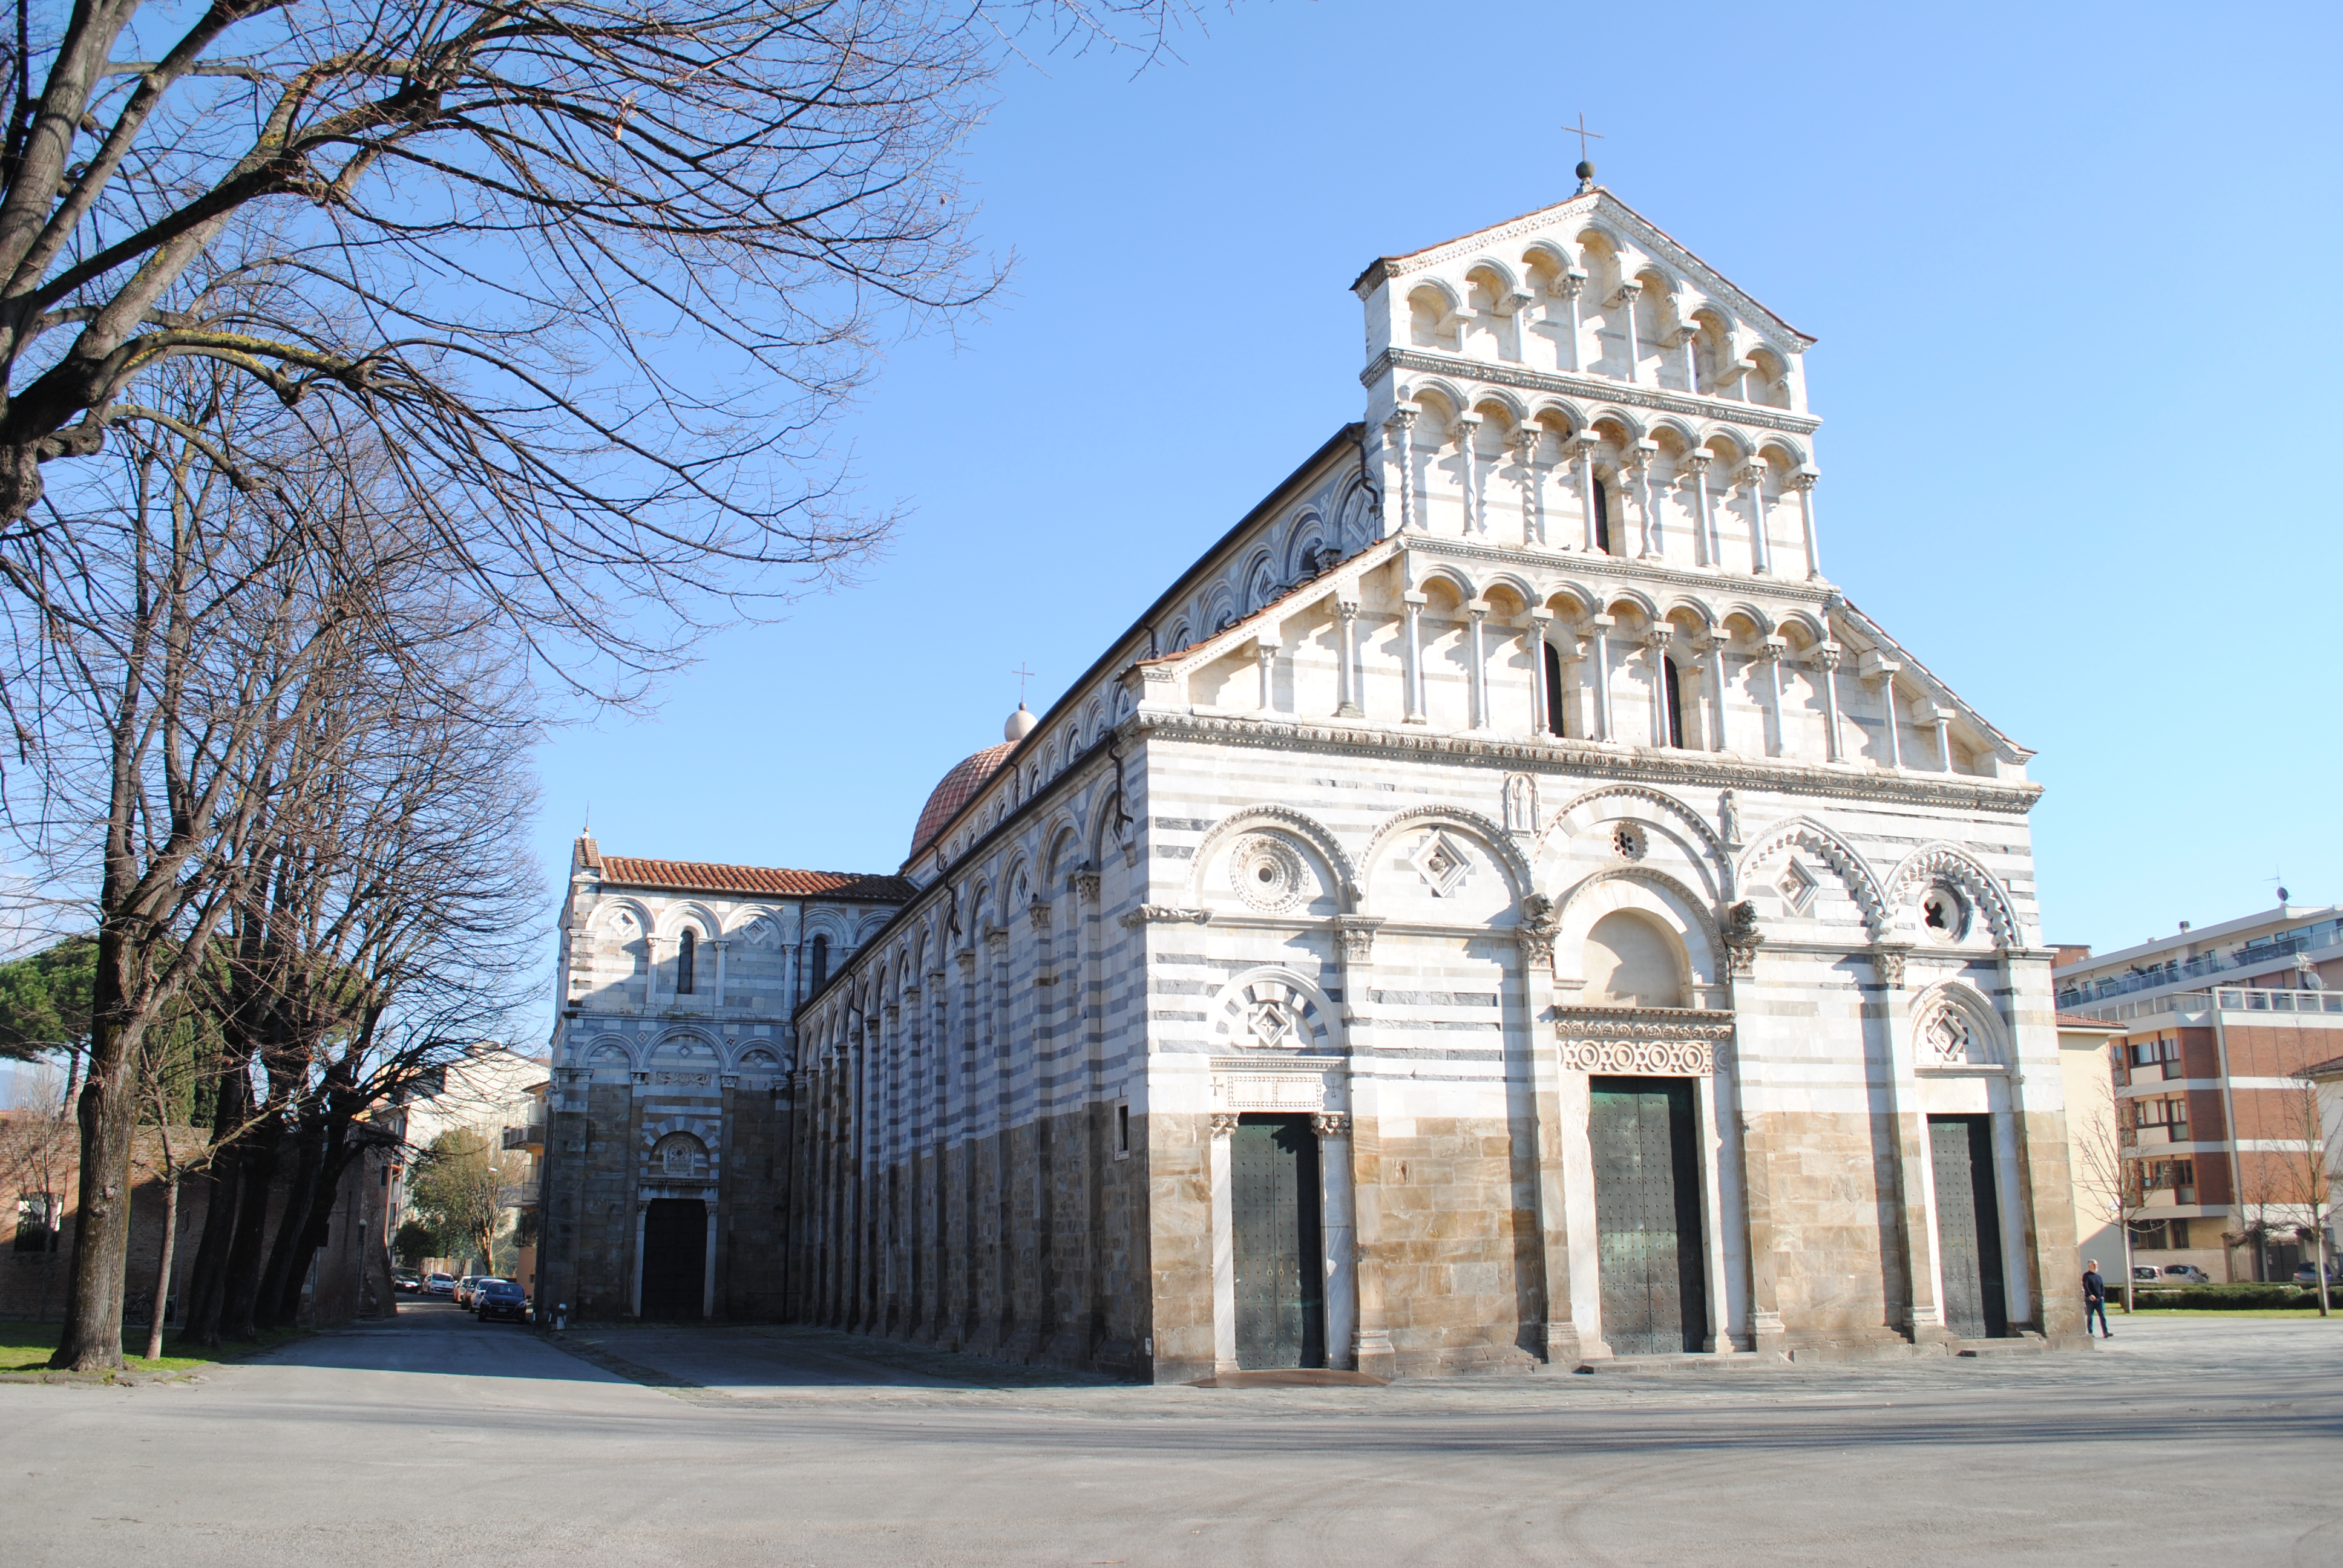 Chiesa di S. Paolo a Ripa d'Arno (chiesa, parrocchiale) - Pisa (PI) 